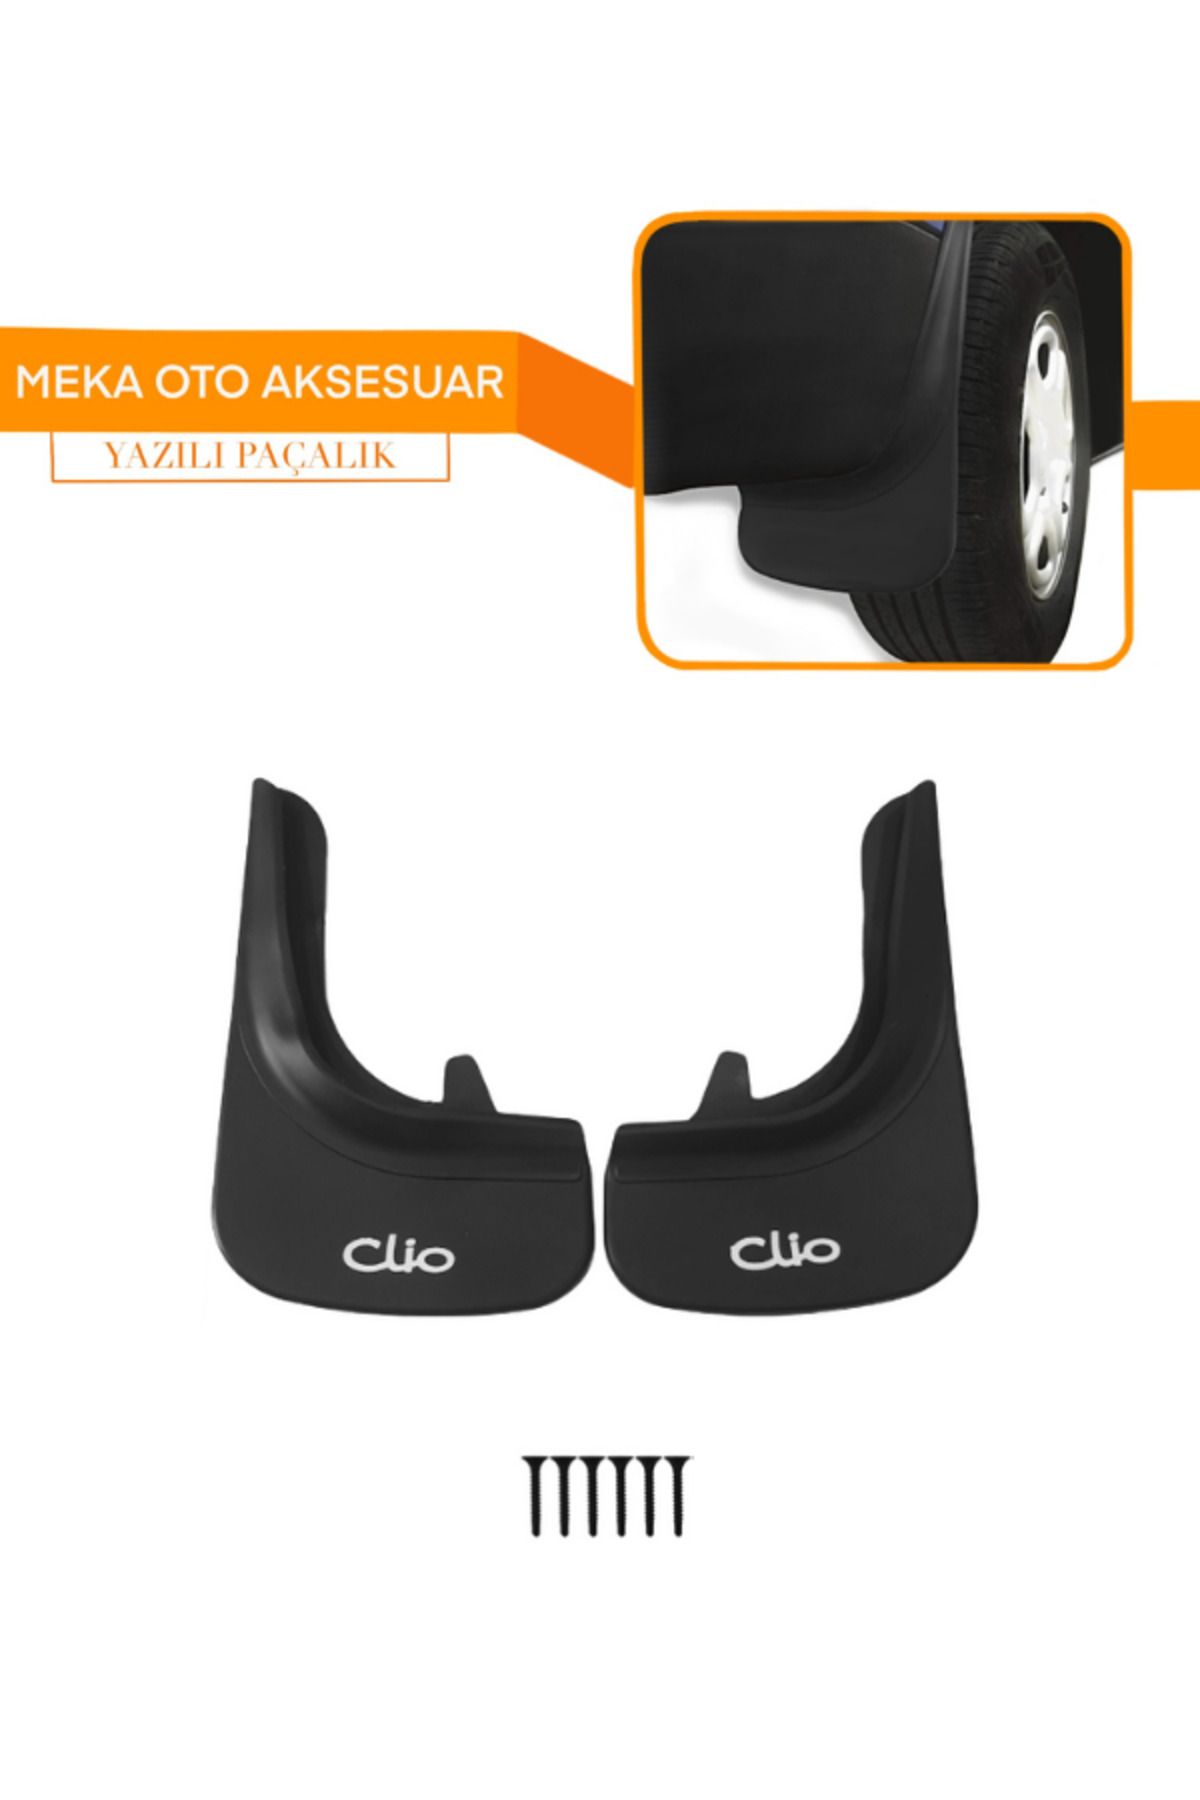 TREND Clio Yazılı uyumlu 2'li Set Ön Veya Arka Paçalık Çamurluk Tozluk Clio 2-3-4-5